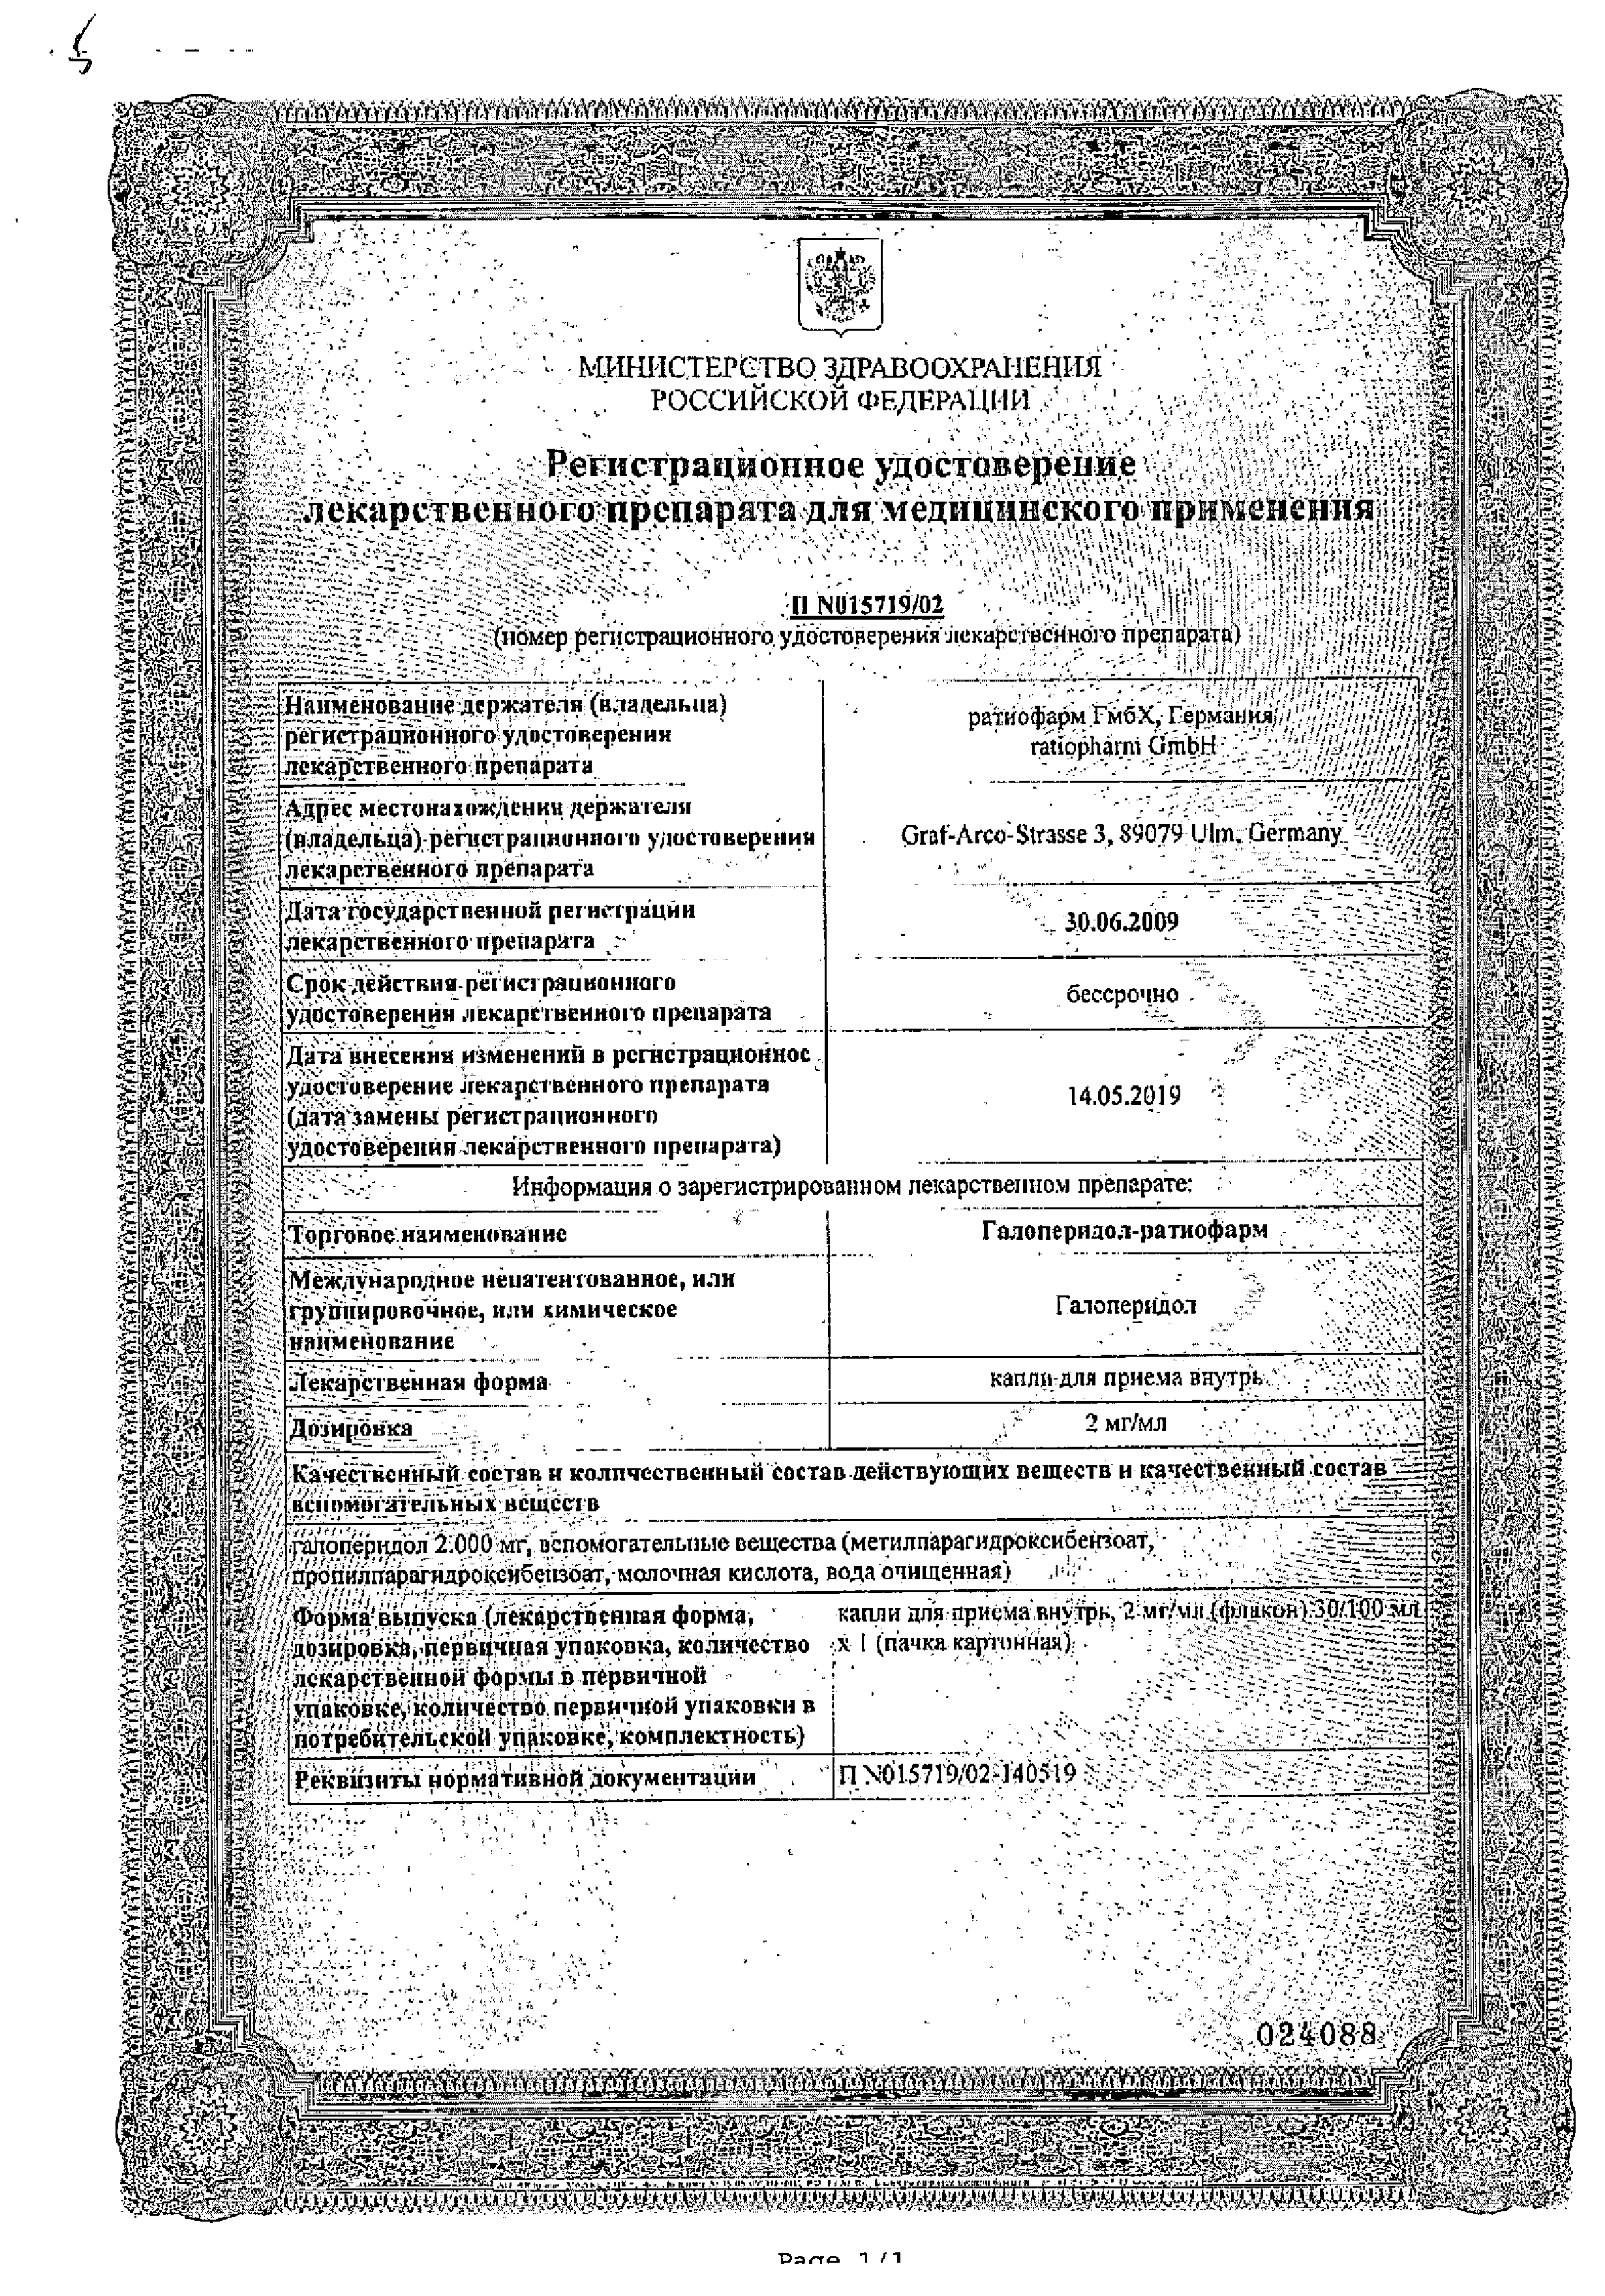 Галоперидол-ратиофарм сертификат